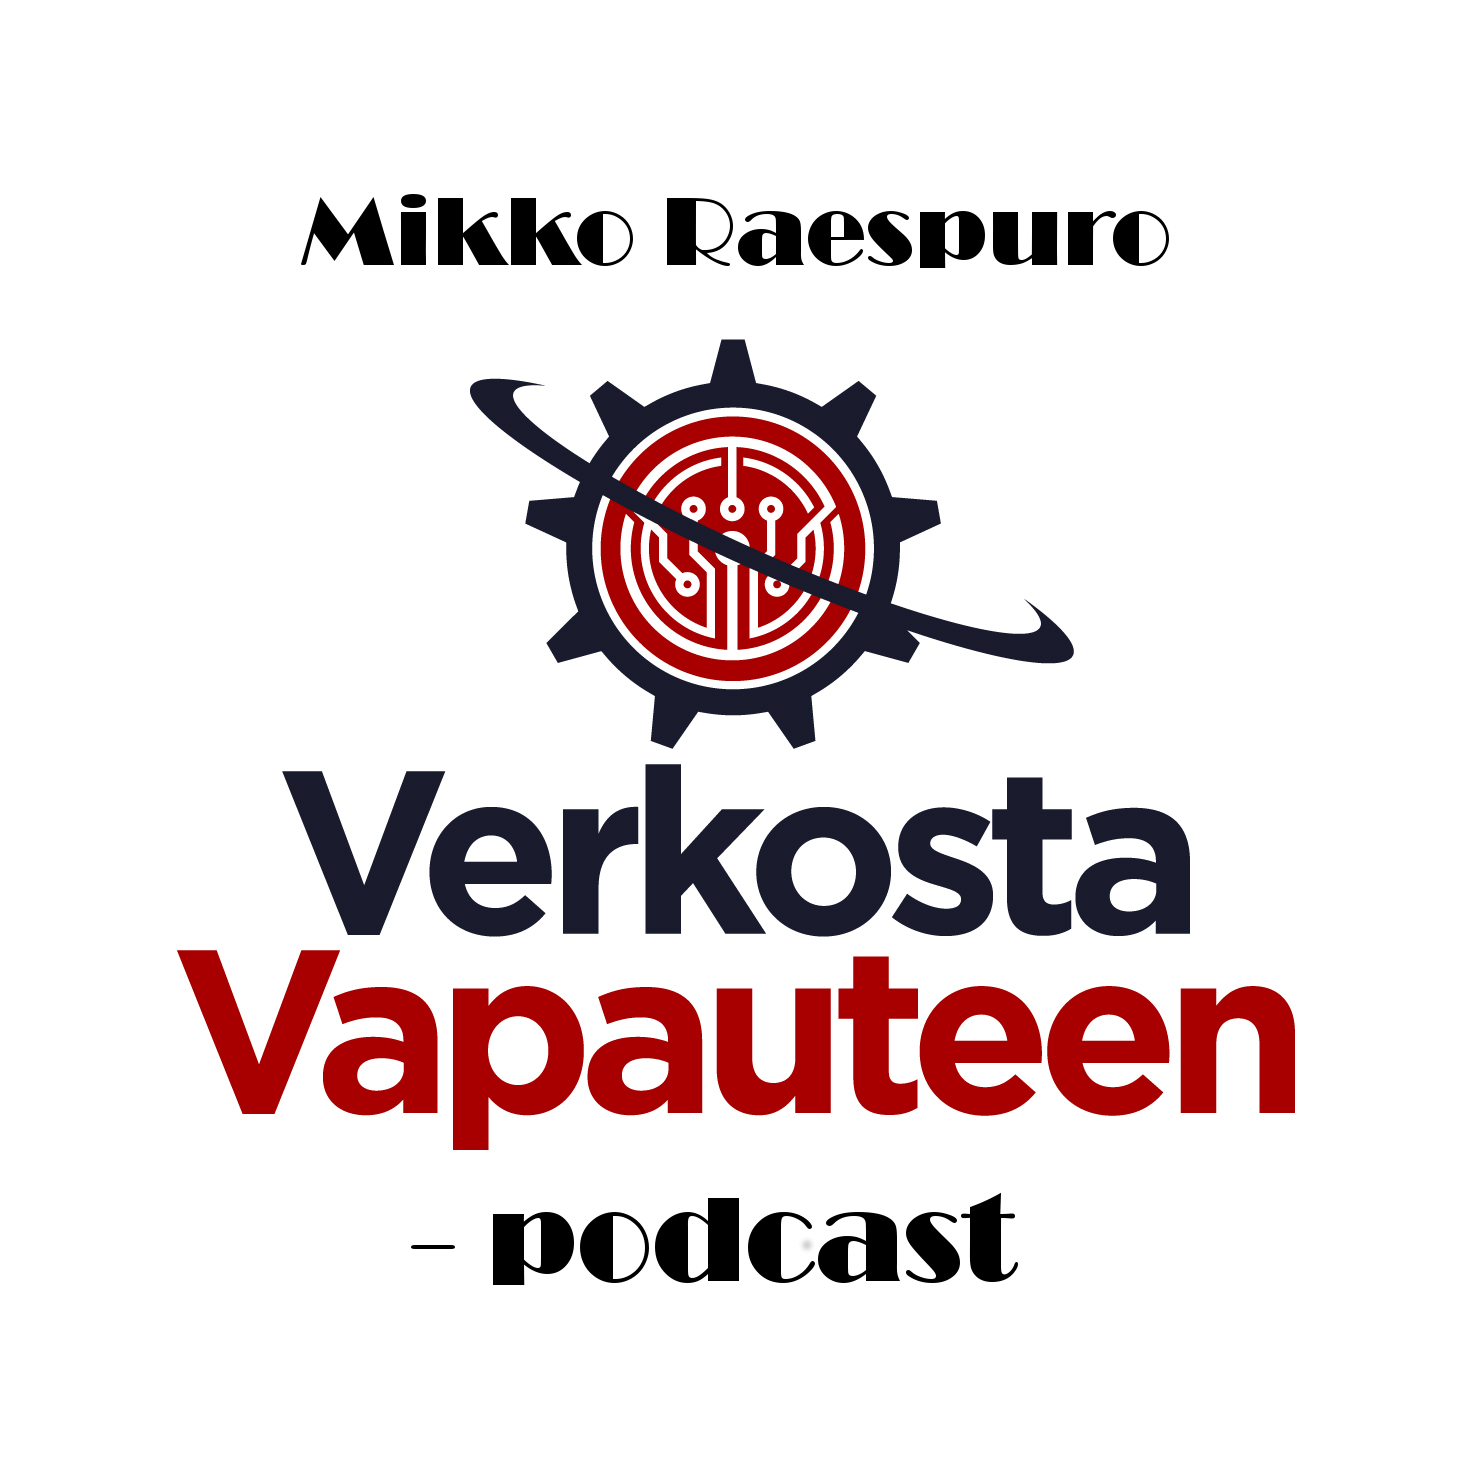 VV 076: Mikko Raespuro’s Internet Marketing Mastery Interview